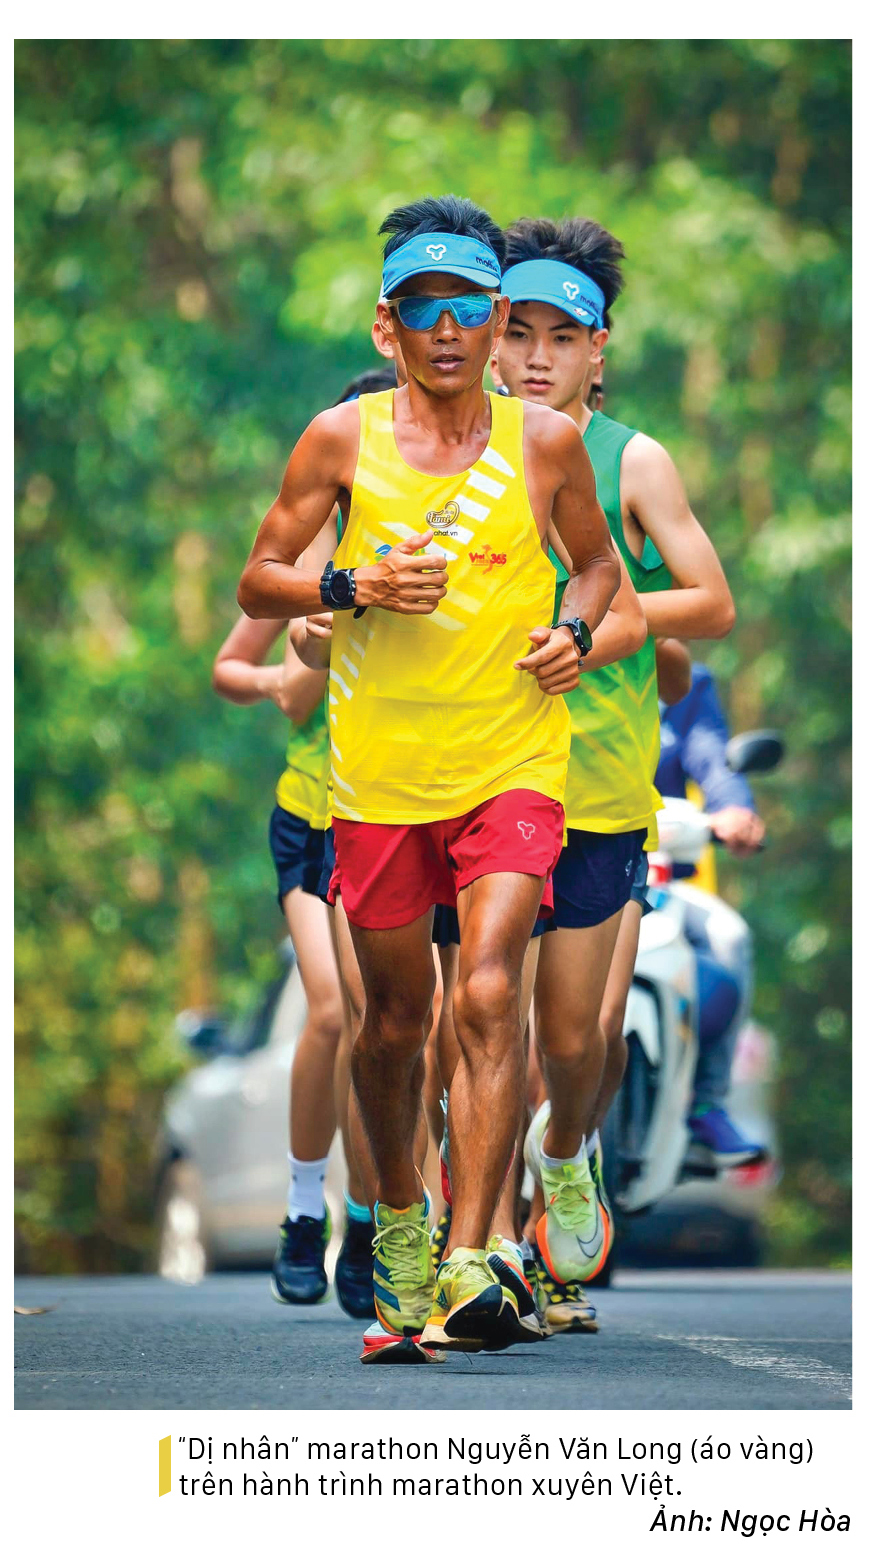 'Dị nhân' marathon Nguyễn Văn Long: 31 ngày chạy bộ xuyên Việt ảnh 6